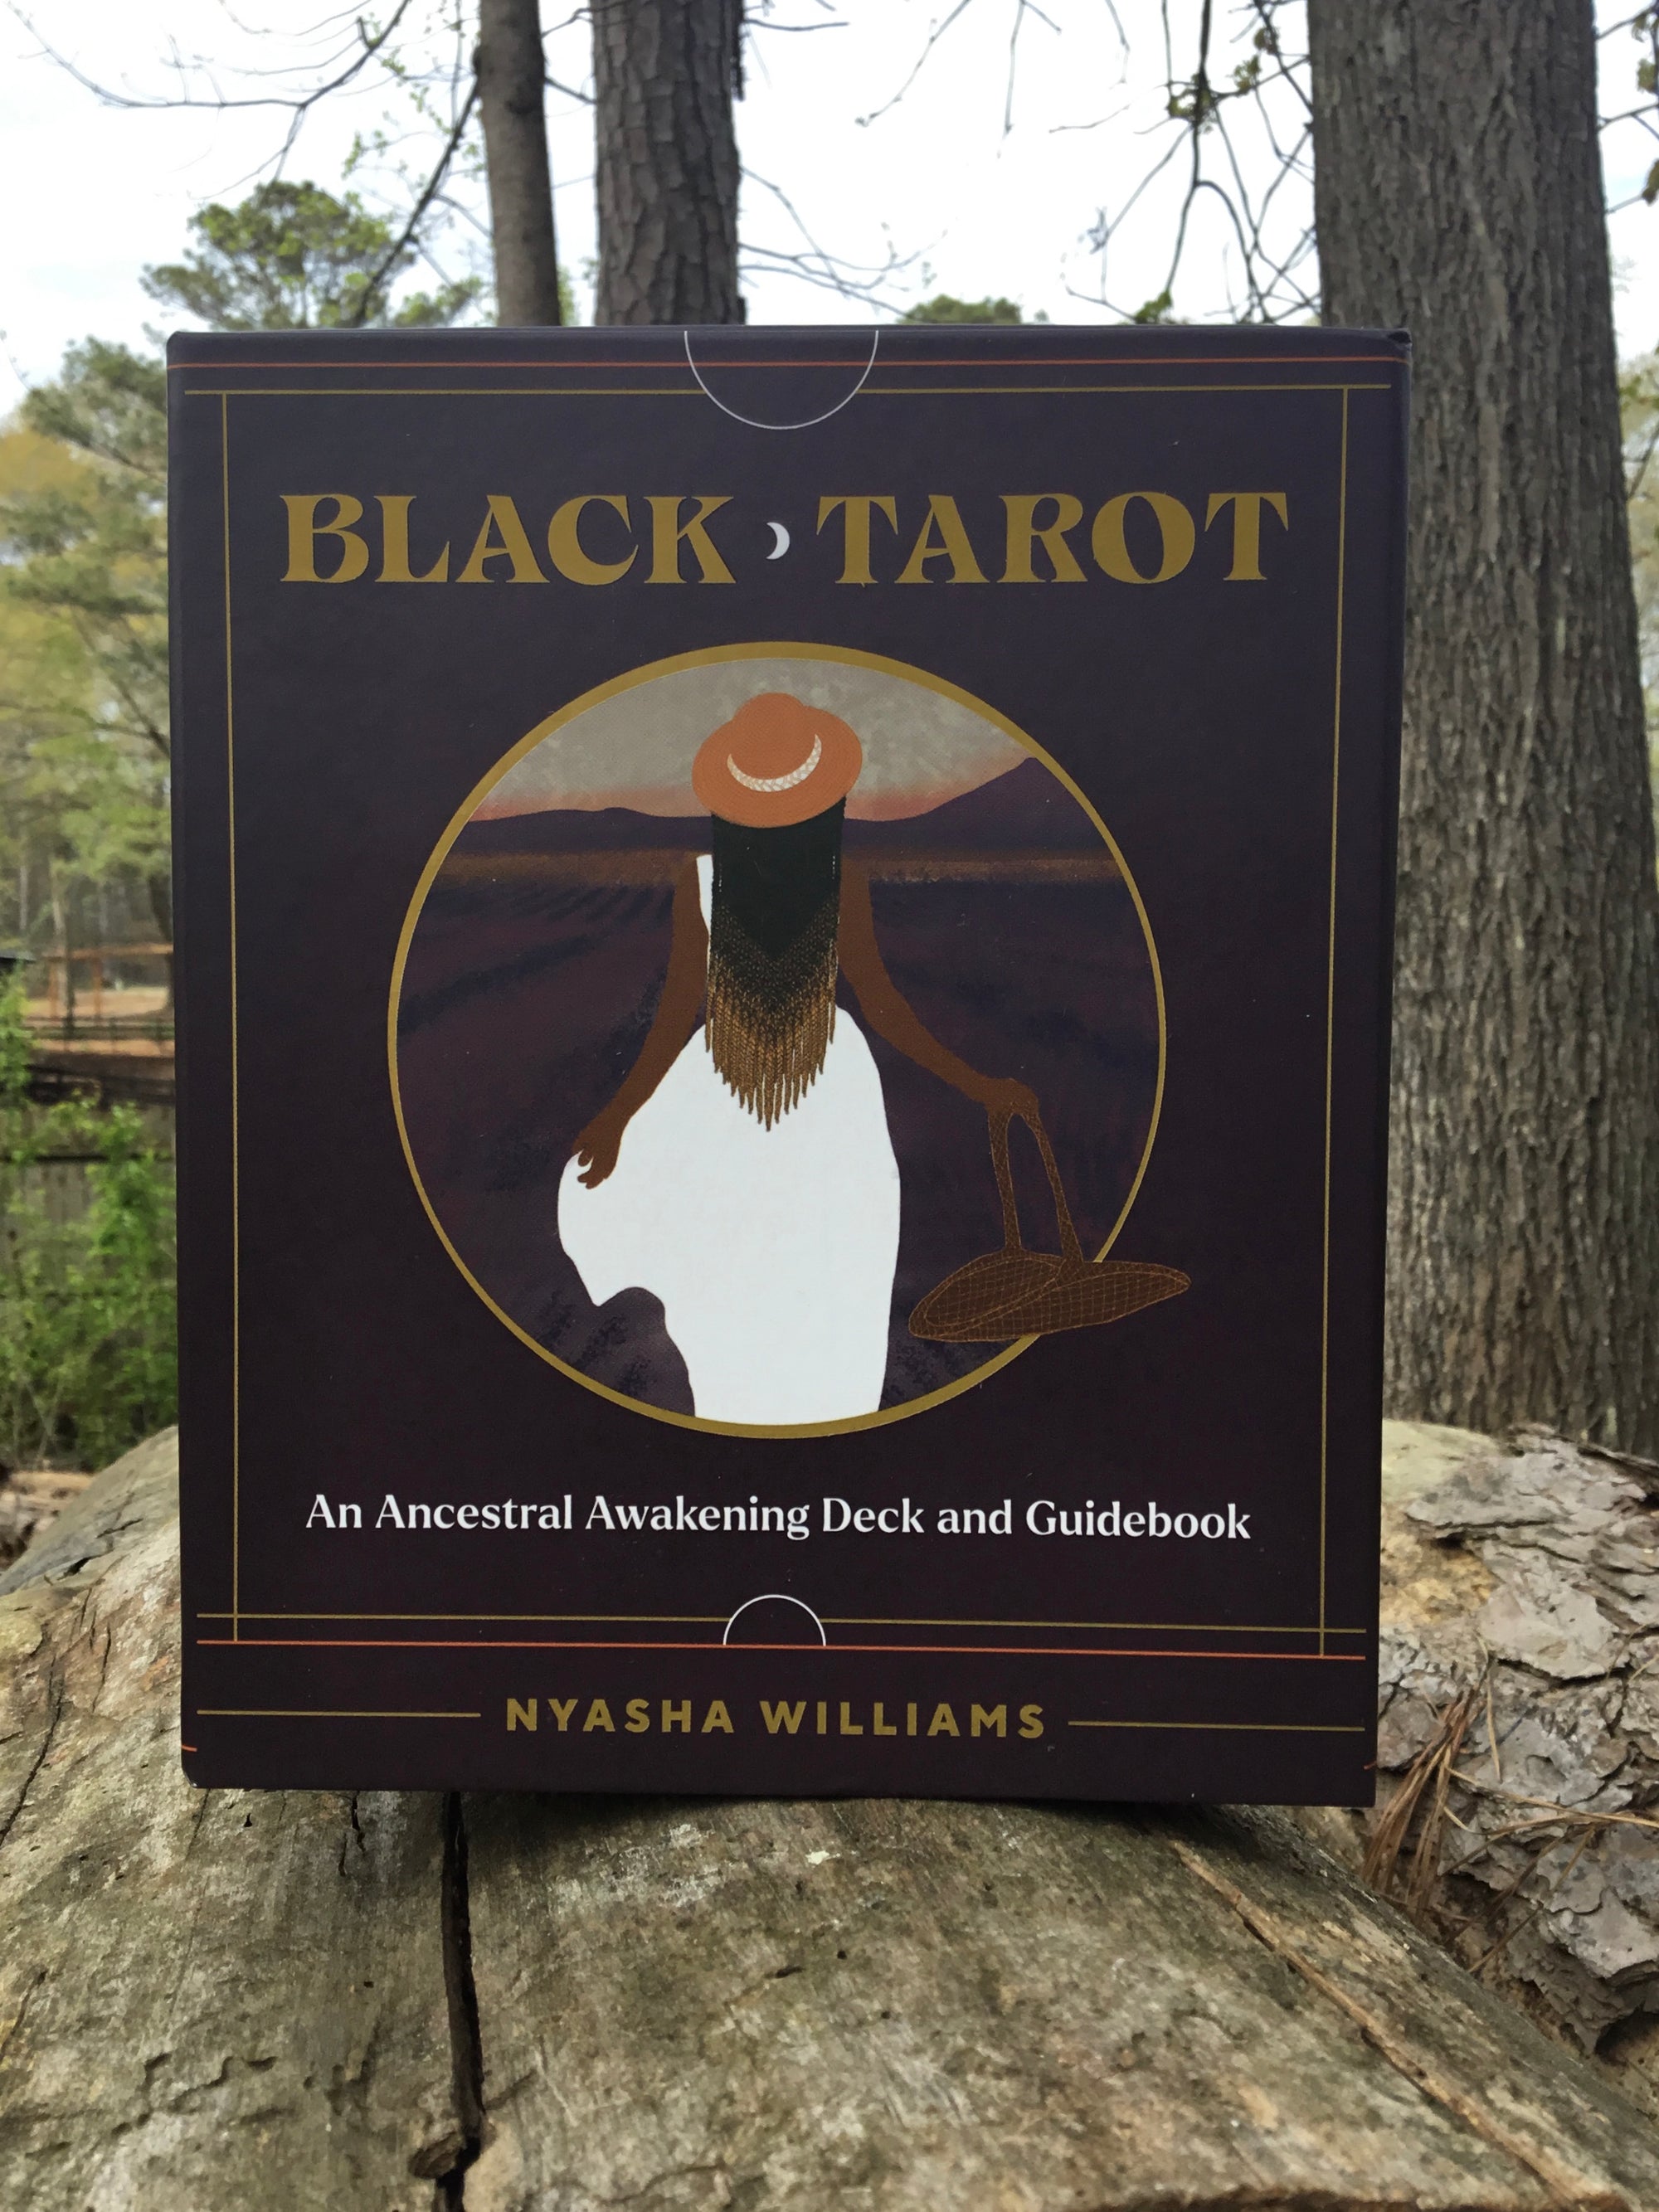 Black Tarot, Black Tarot Decks, Black Tarot Ancestor Awakening Deck